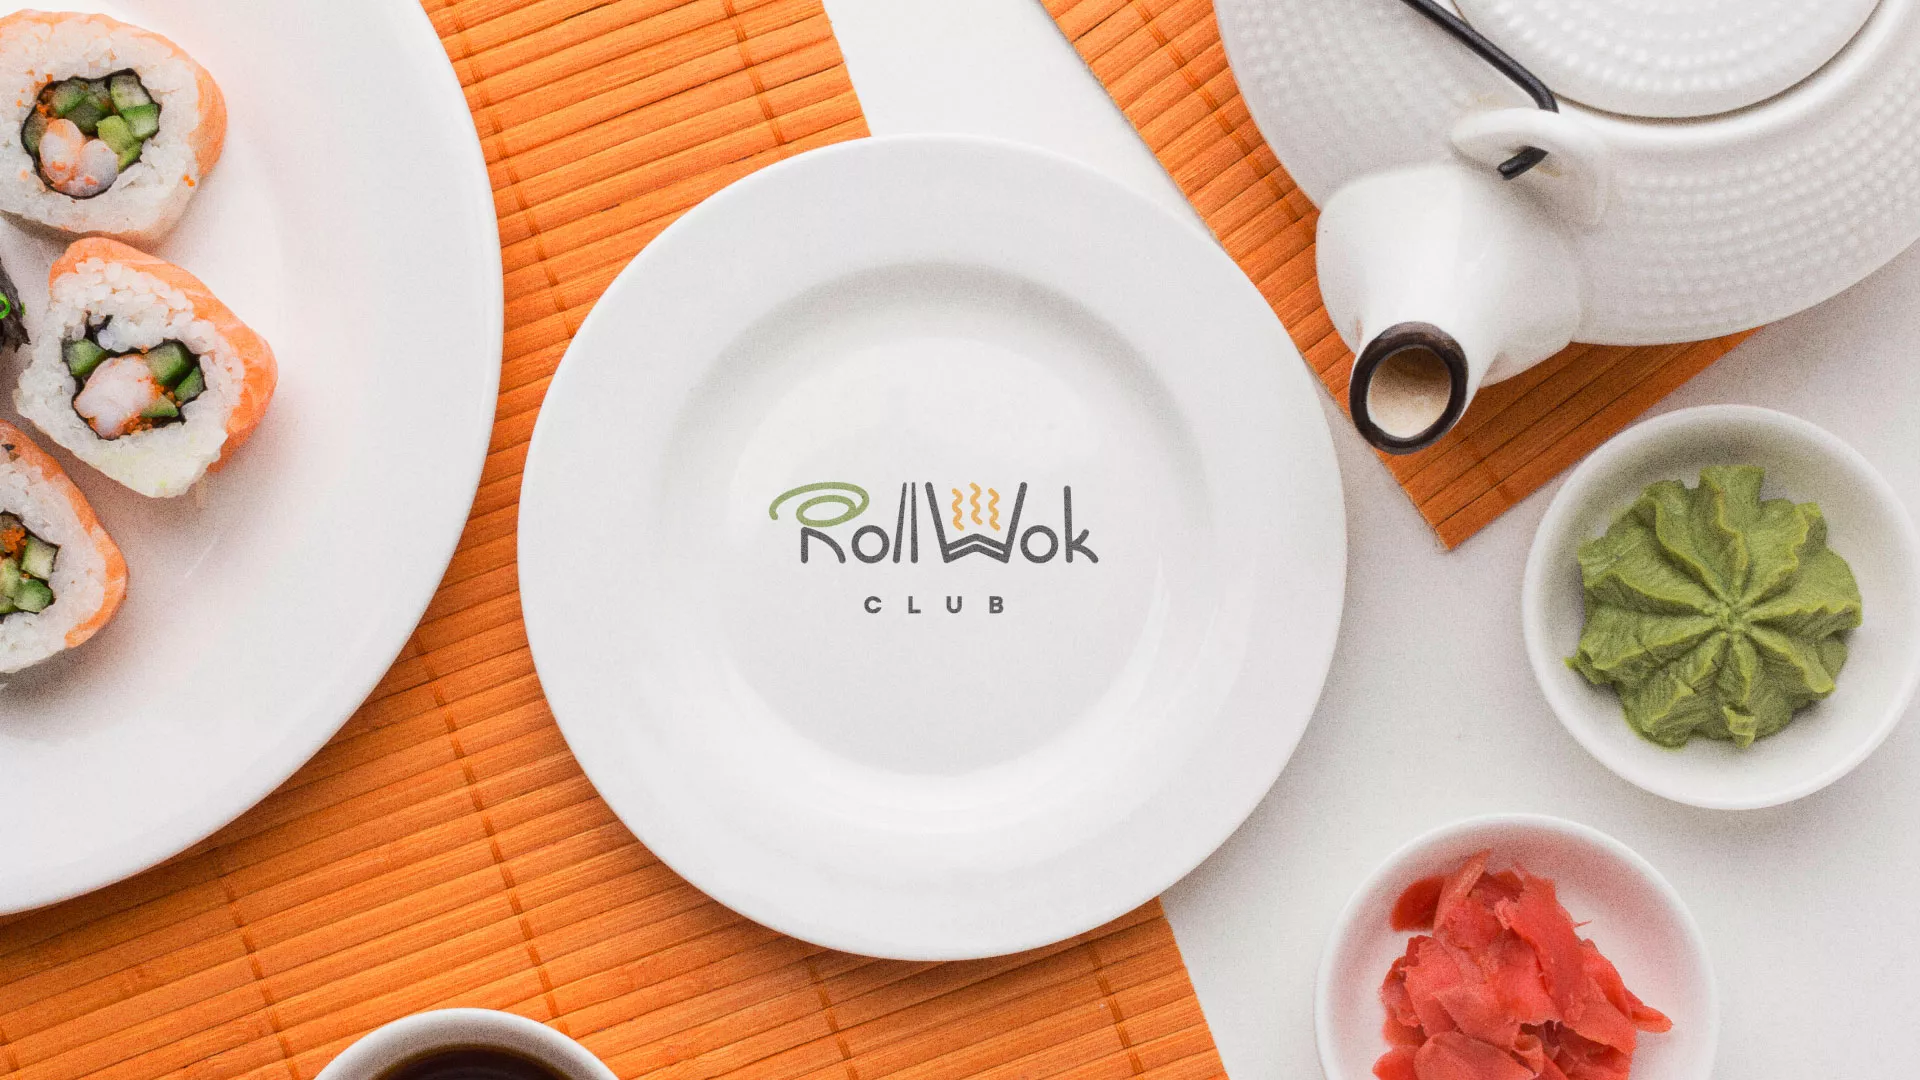 Разработка логотипа и фирменного стиля суши-бара «Roll Wok Club» в Каменске-Уральском